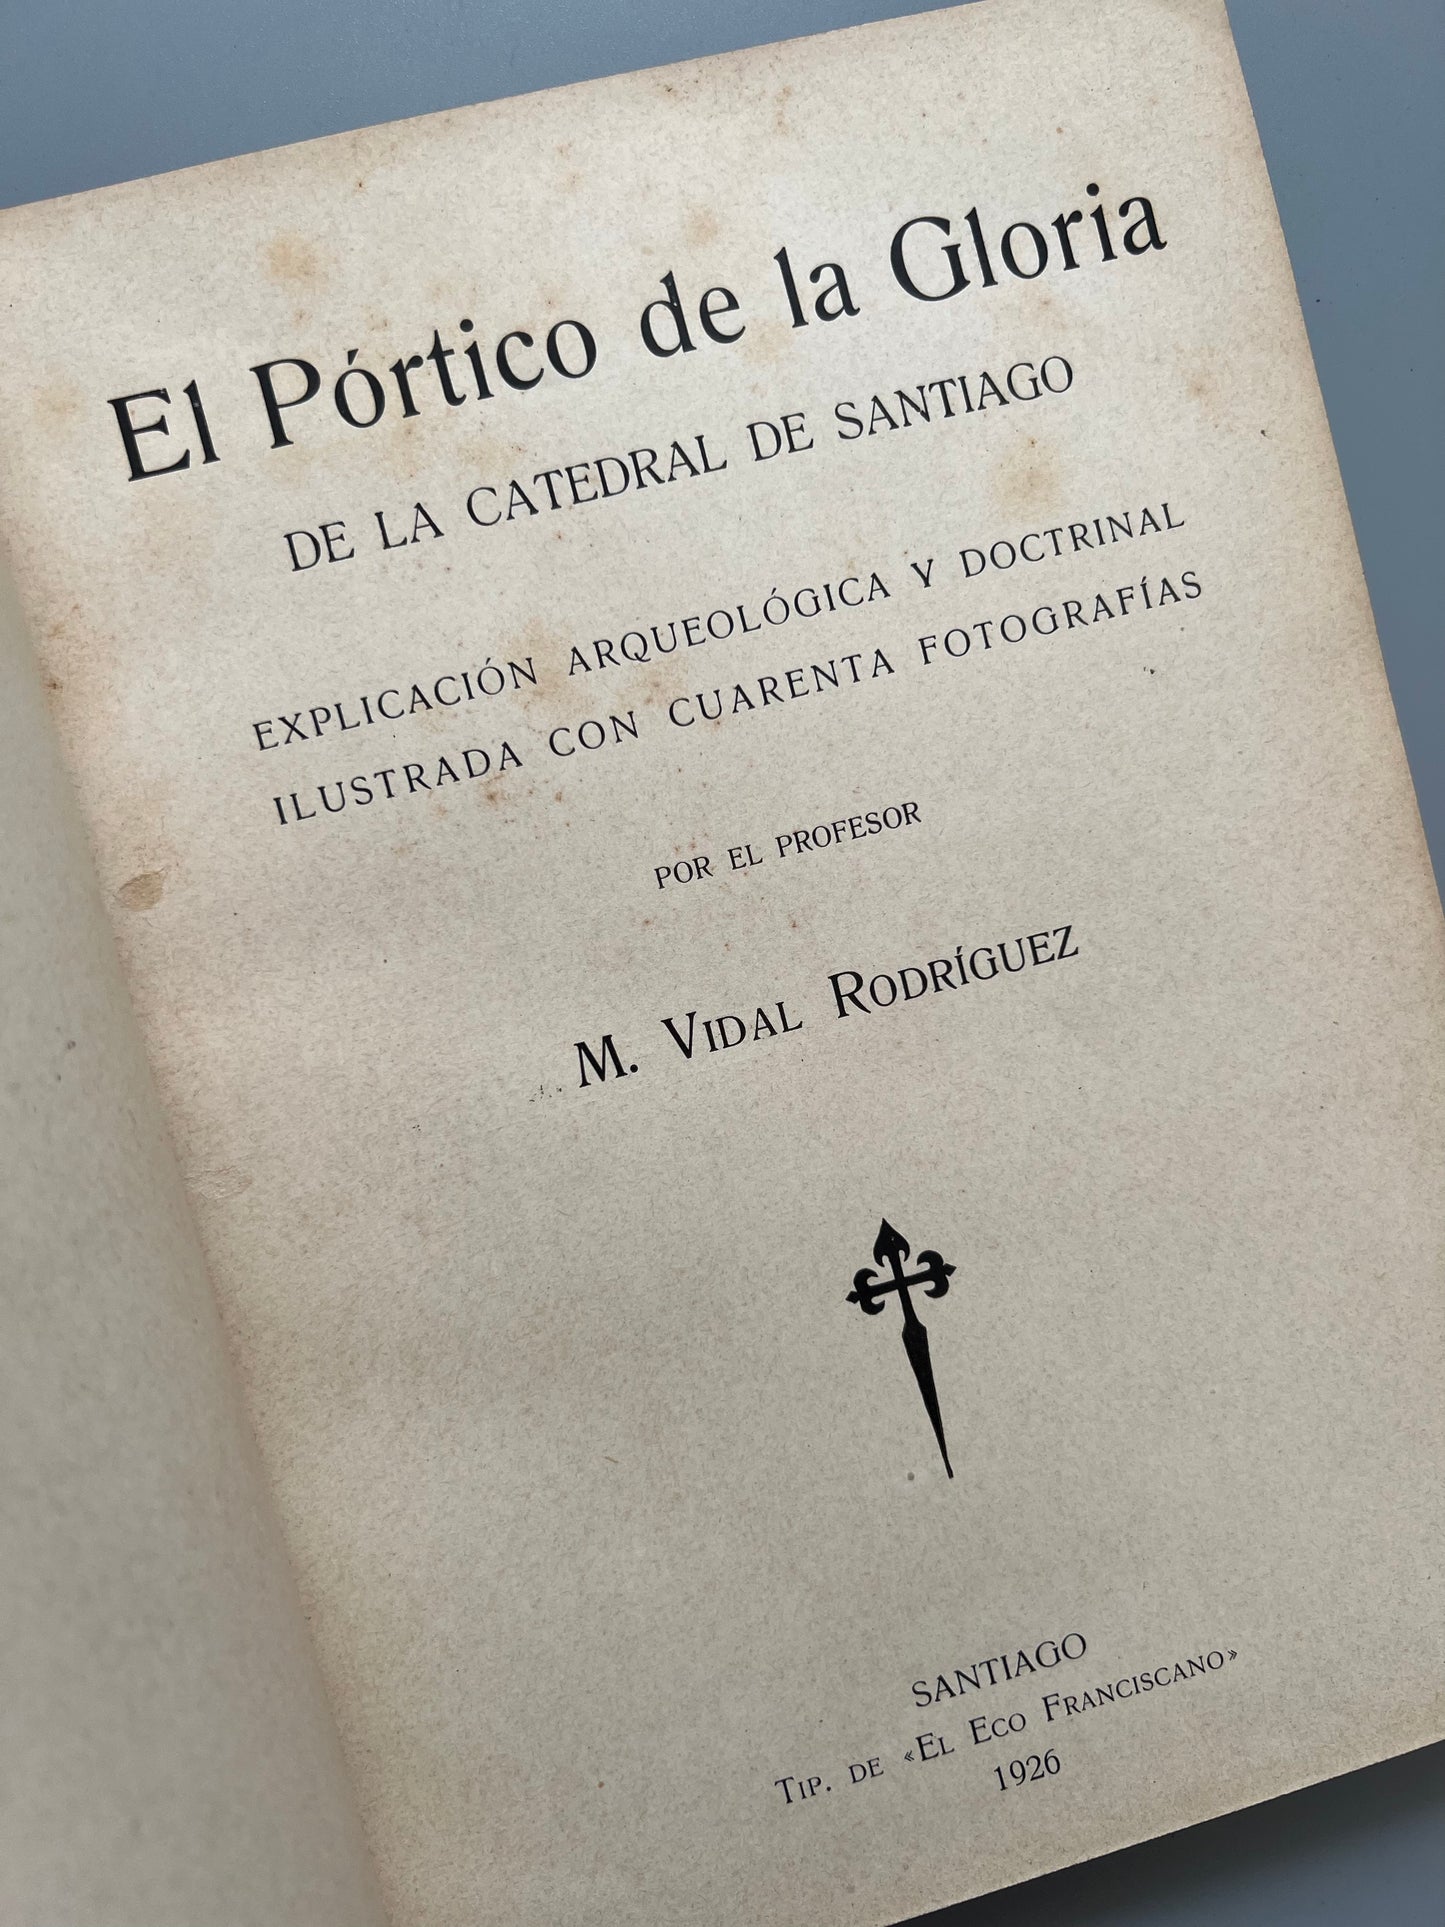 El Pórtico de la Gloria de la catedral de Santiago,  M. Vidal Rodríguez - Tip. de El Eco Franciscano, 1926